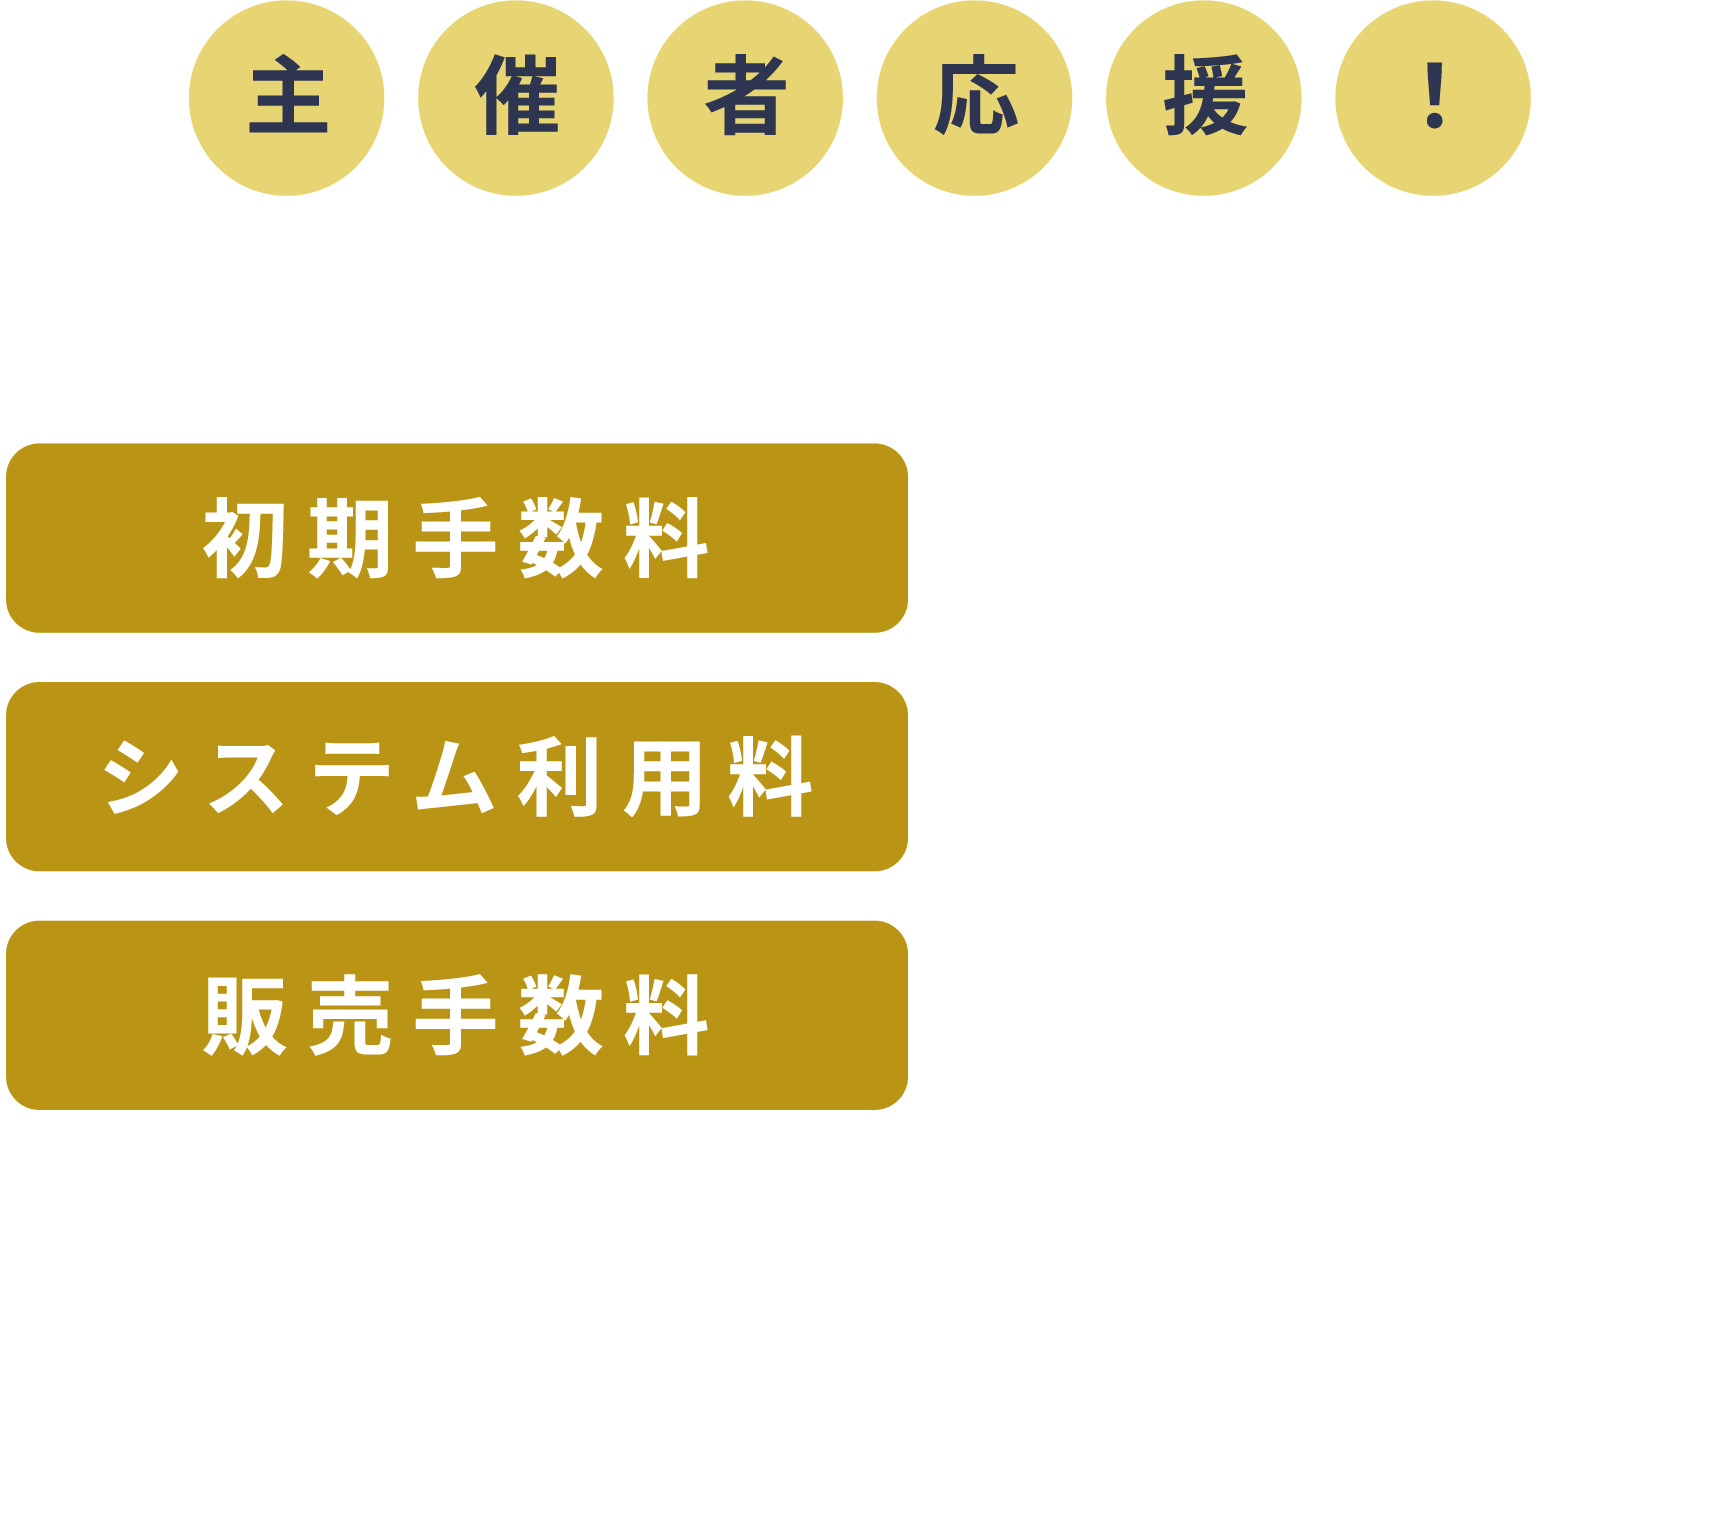 手数料0円キャンペーン